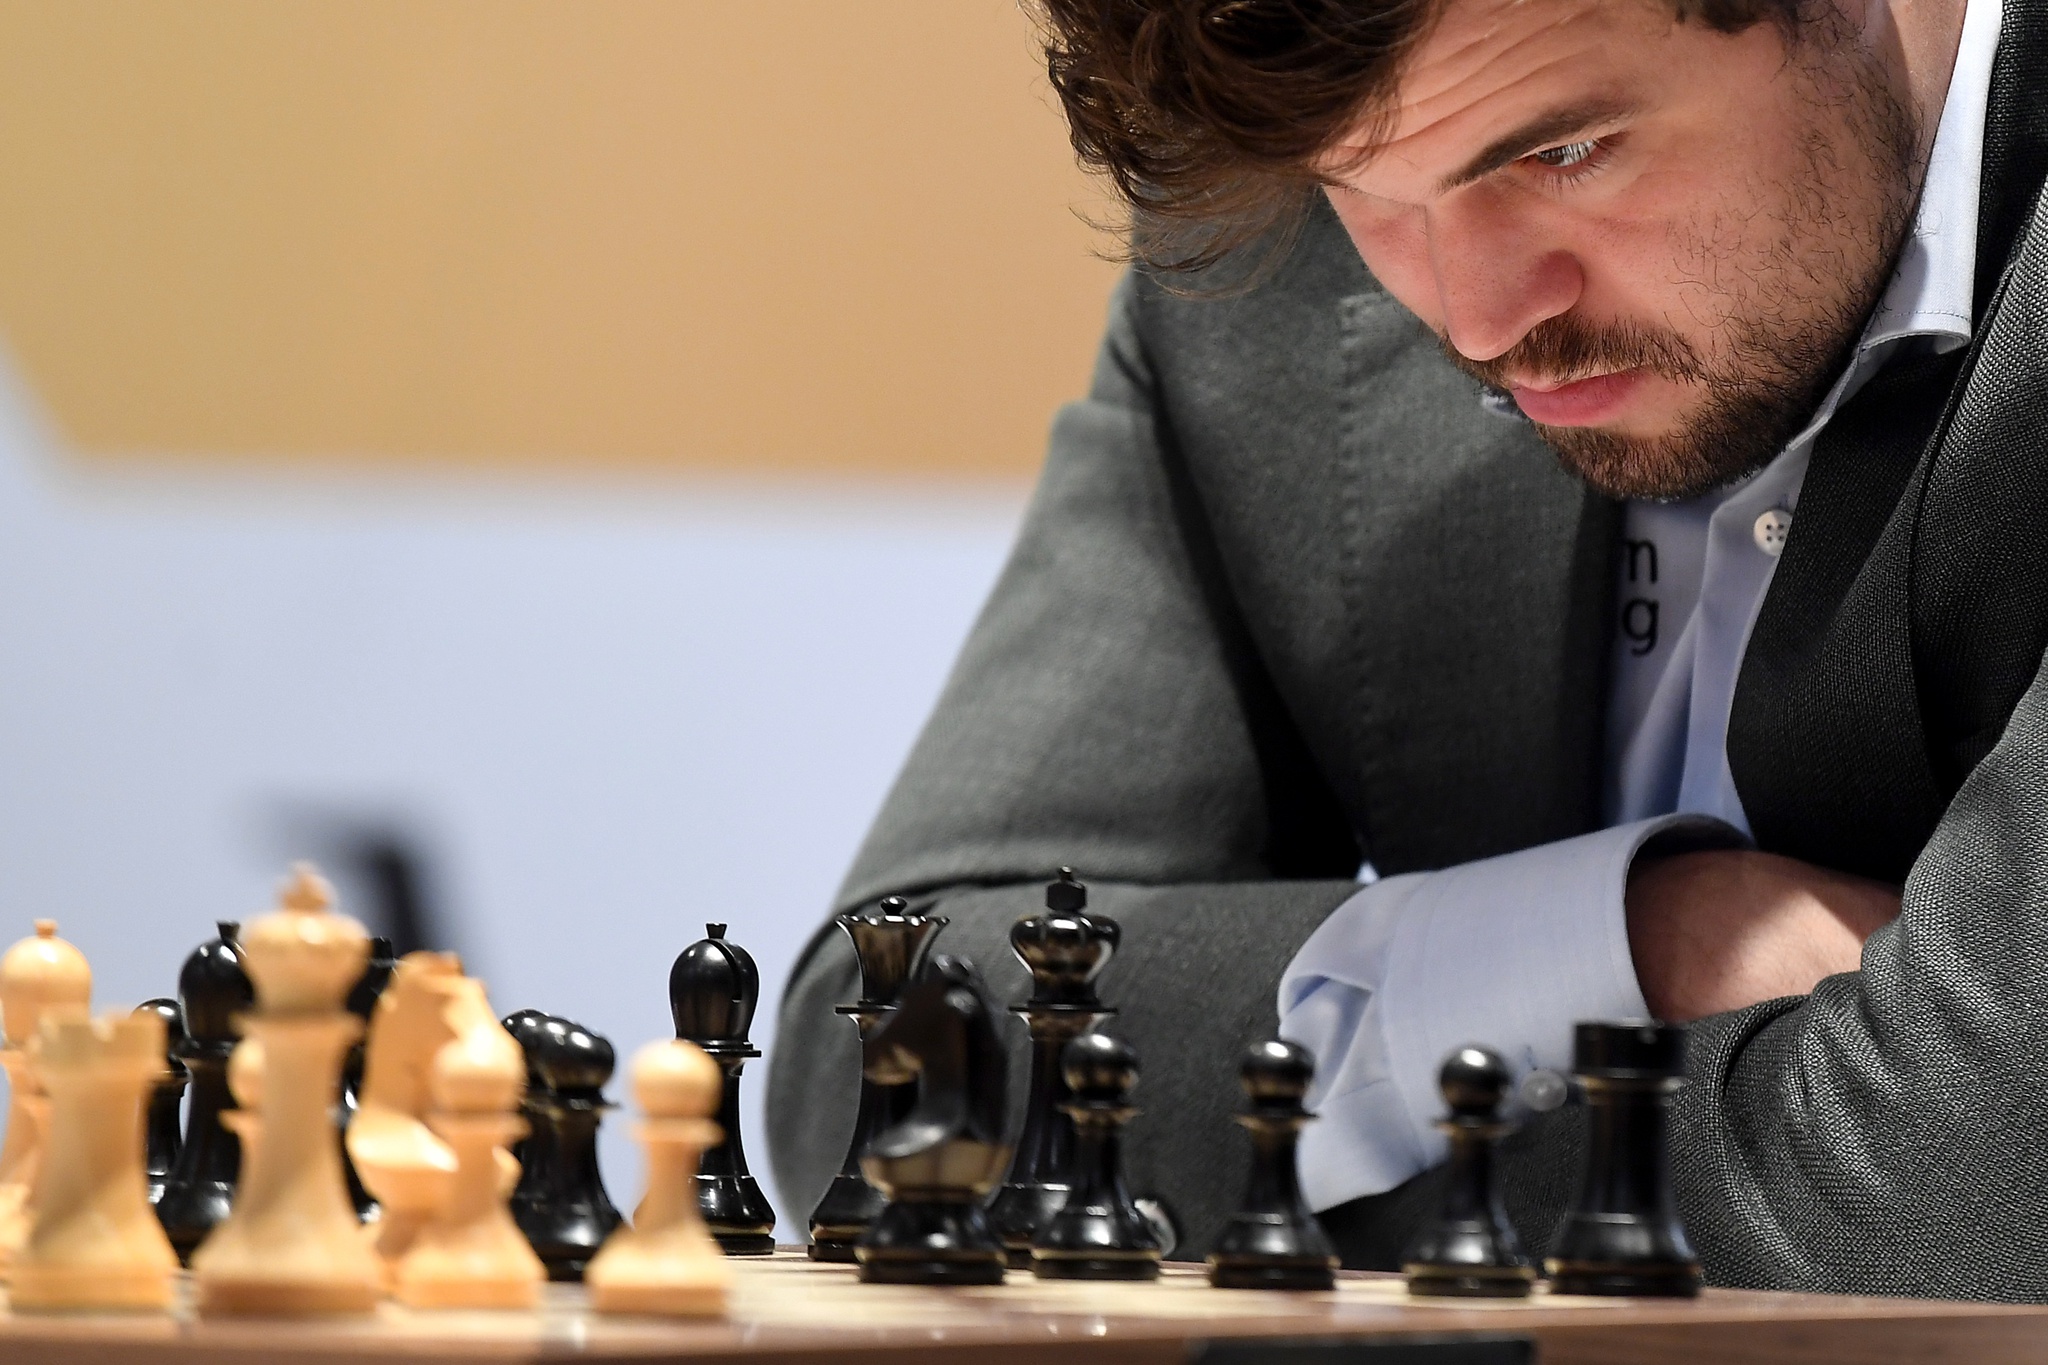 Como Magnus Carlsen, o melhor jogador de xadrez do mundo, calcula os  movimentos com antecedência? - Quora